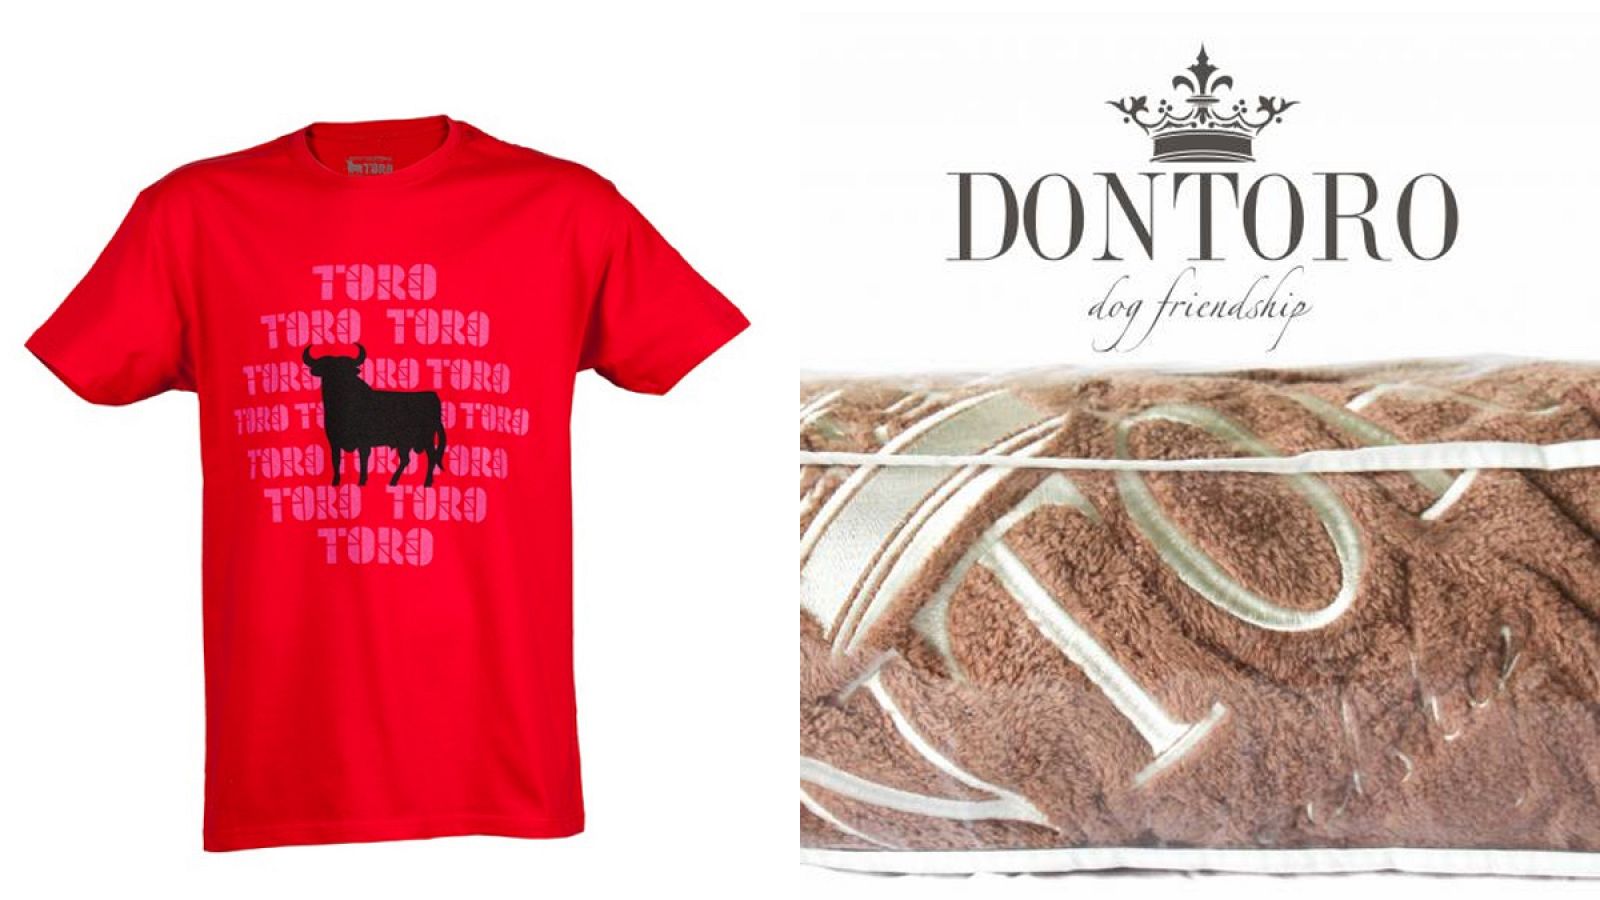 Una camiseta de Osborne y una manta de la marca 'Don Toro'